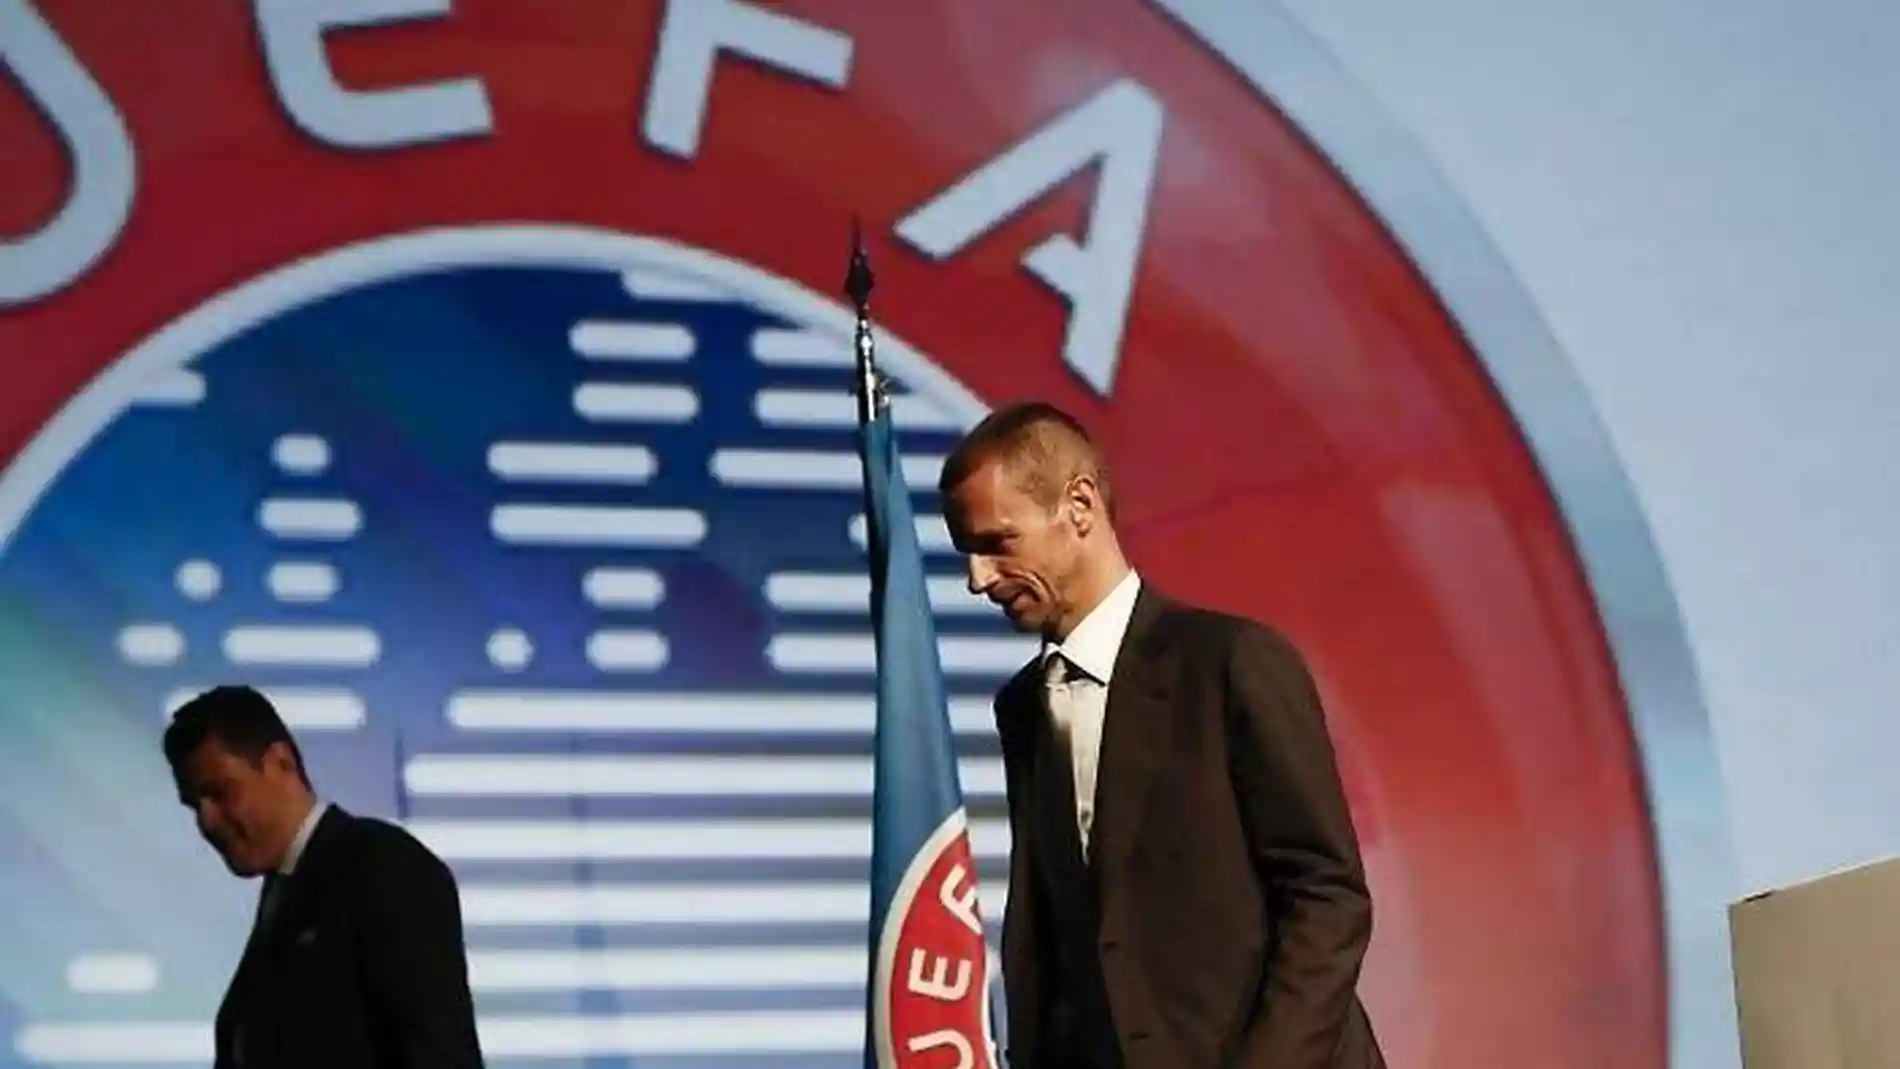 El presidente de UEFA, Aleksander Ceferin, siempre se ha mostrado contrario a la Superliga